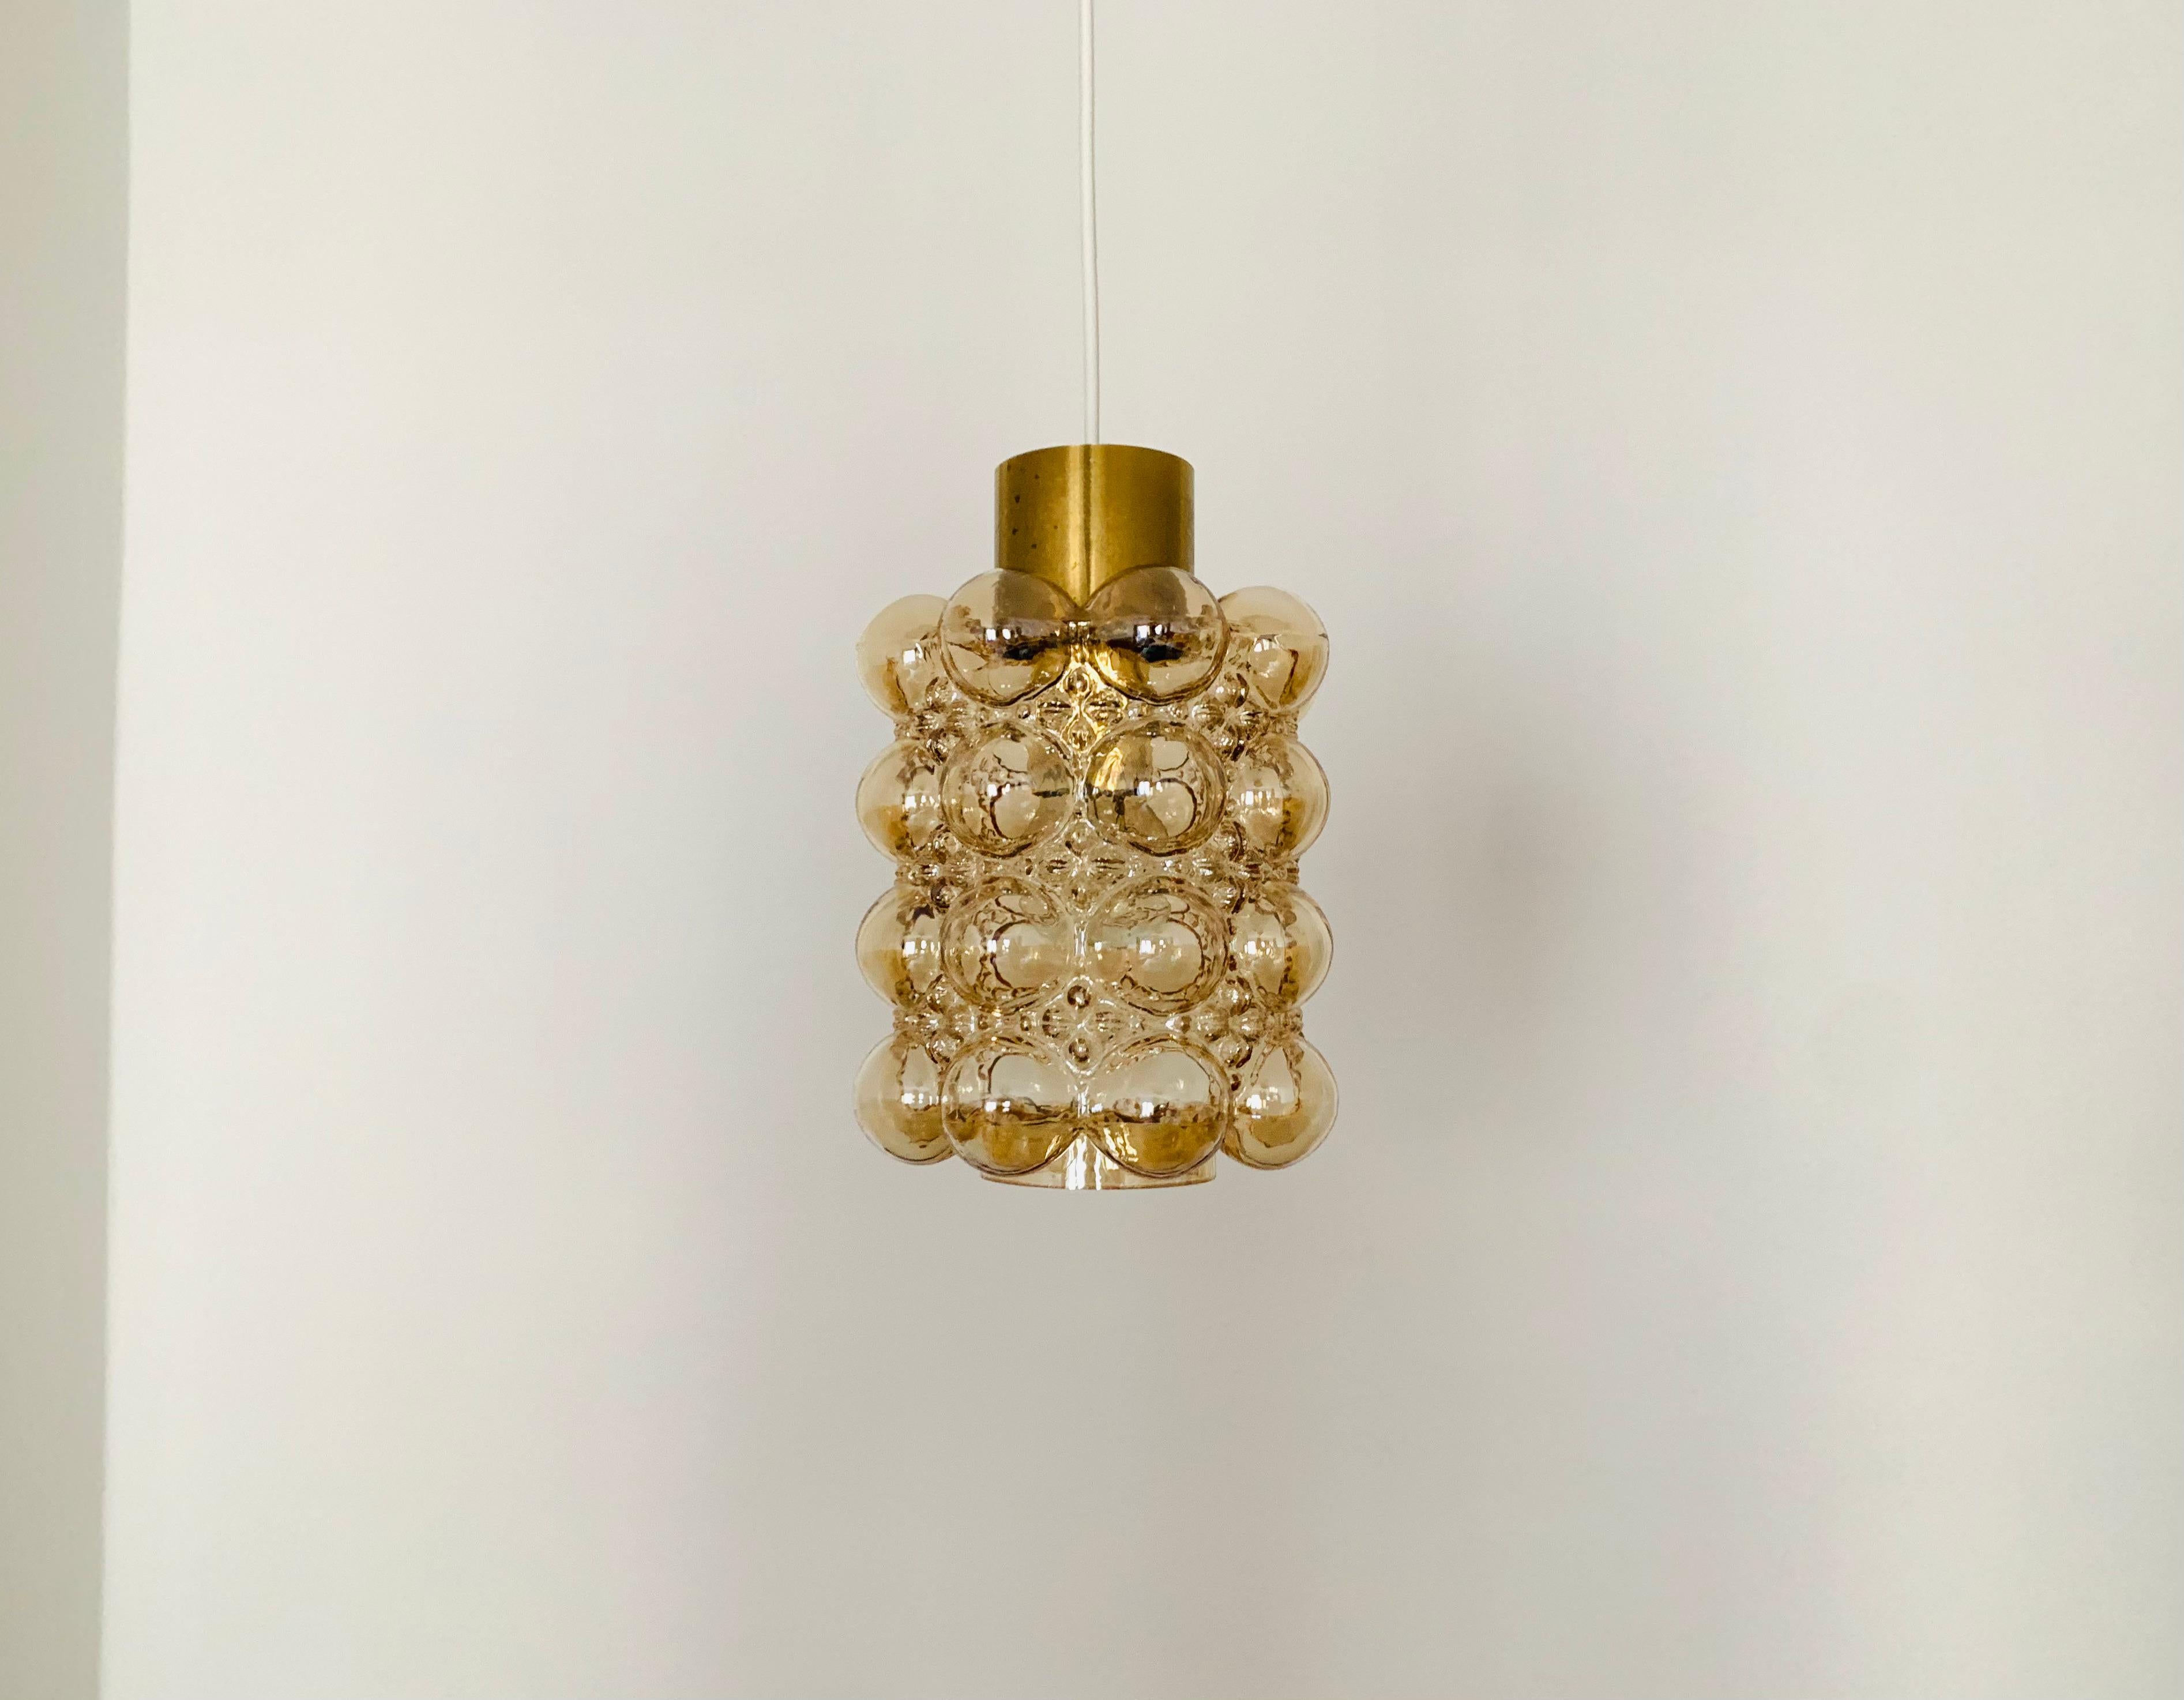 Très belle lampe suspendue en verre bulle par Helena Tynell pour les verreries de Limburg.
La lampe diffuse un jeu de lumière spectaculaire dans la pièce et enchante par son charisme.
Une fabrication de grande qualité et un design